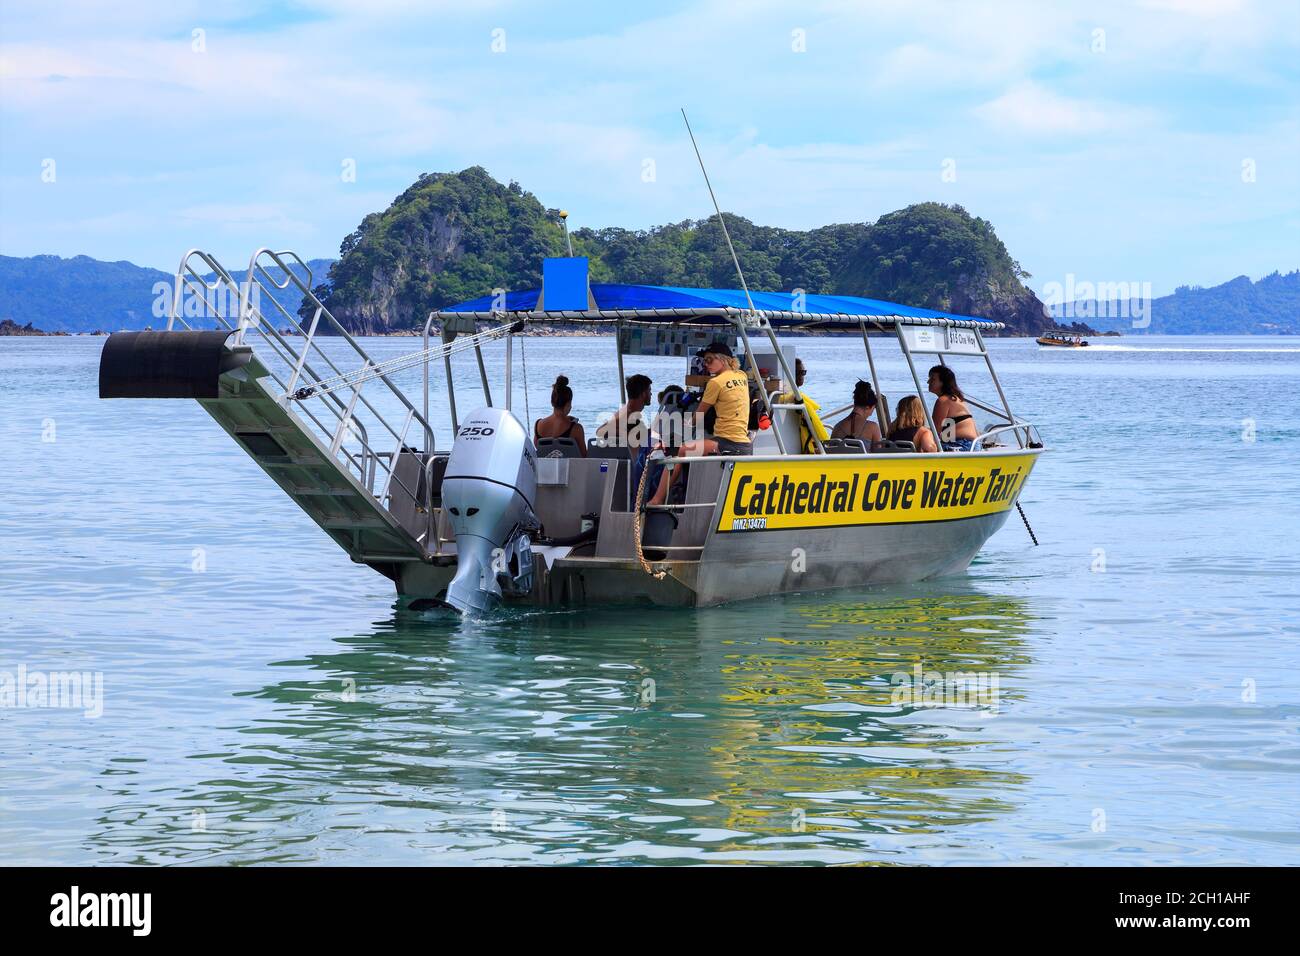 Das 'Cathedral Cove Water Taxi', ein Ausflugsboot zu einer der beliebtesten Sehenswürdigkeiten Neuseelands, fährt bis zum Strand in Hahei, NZ Stockfoto